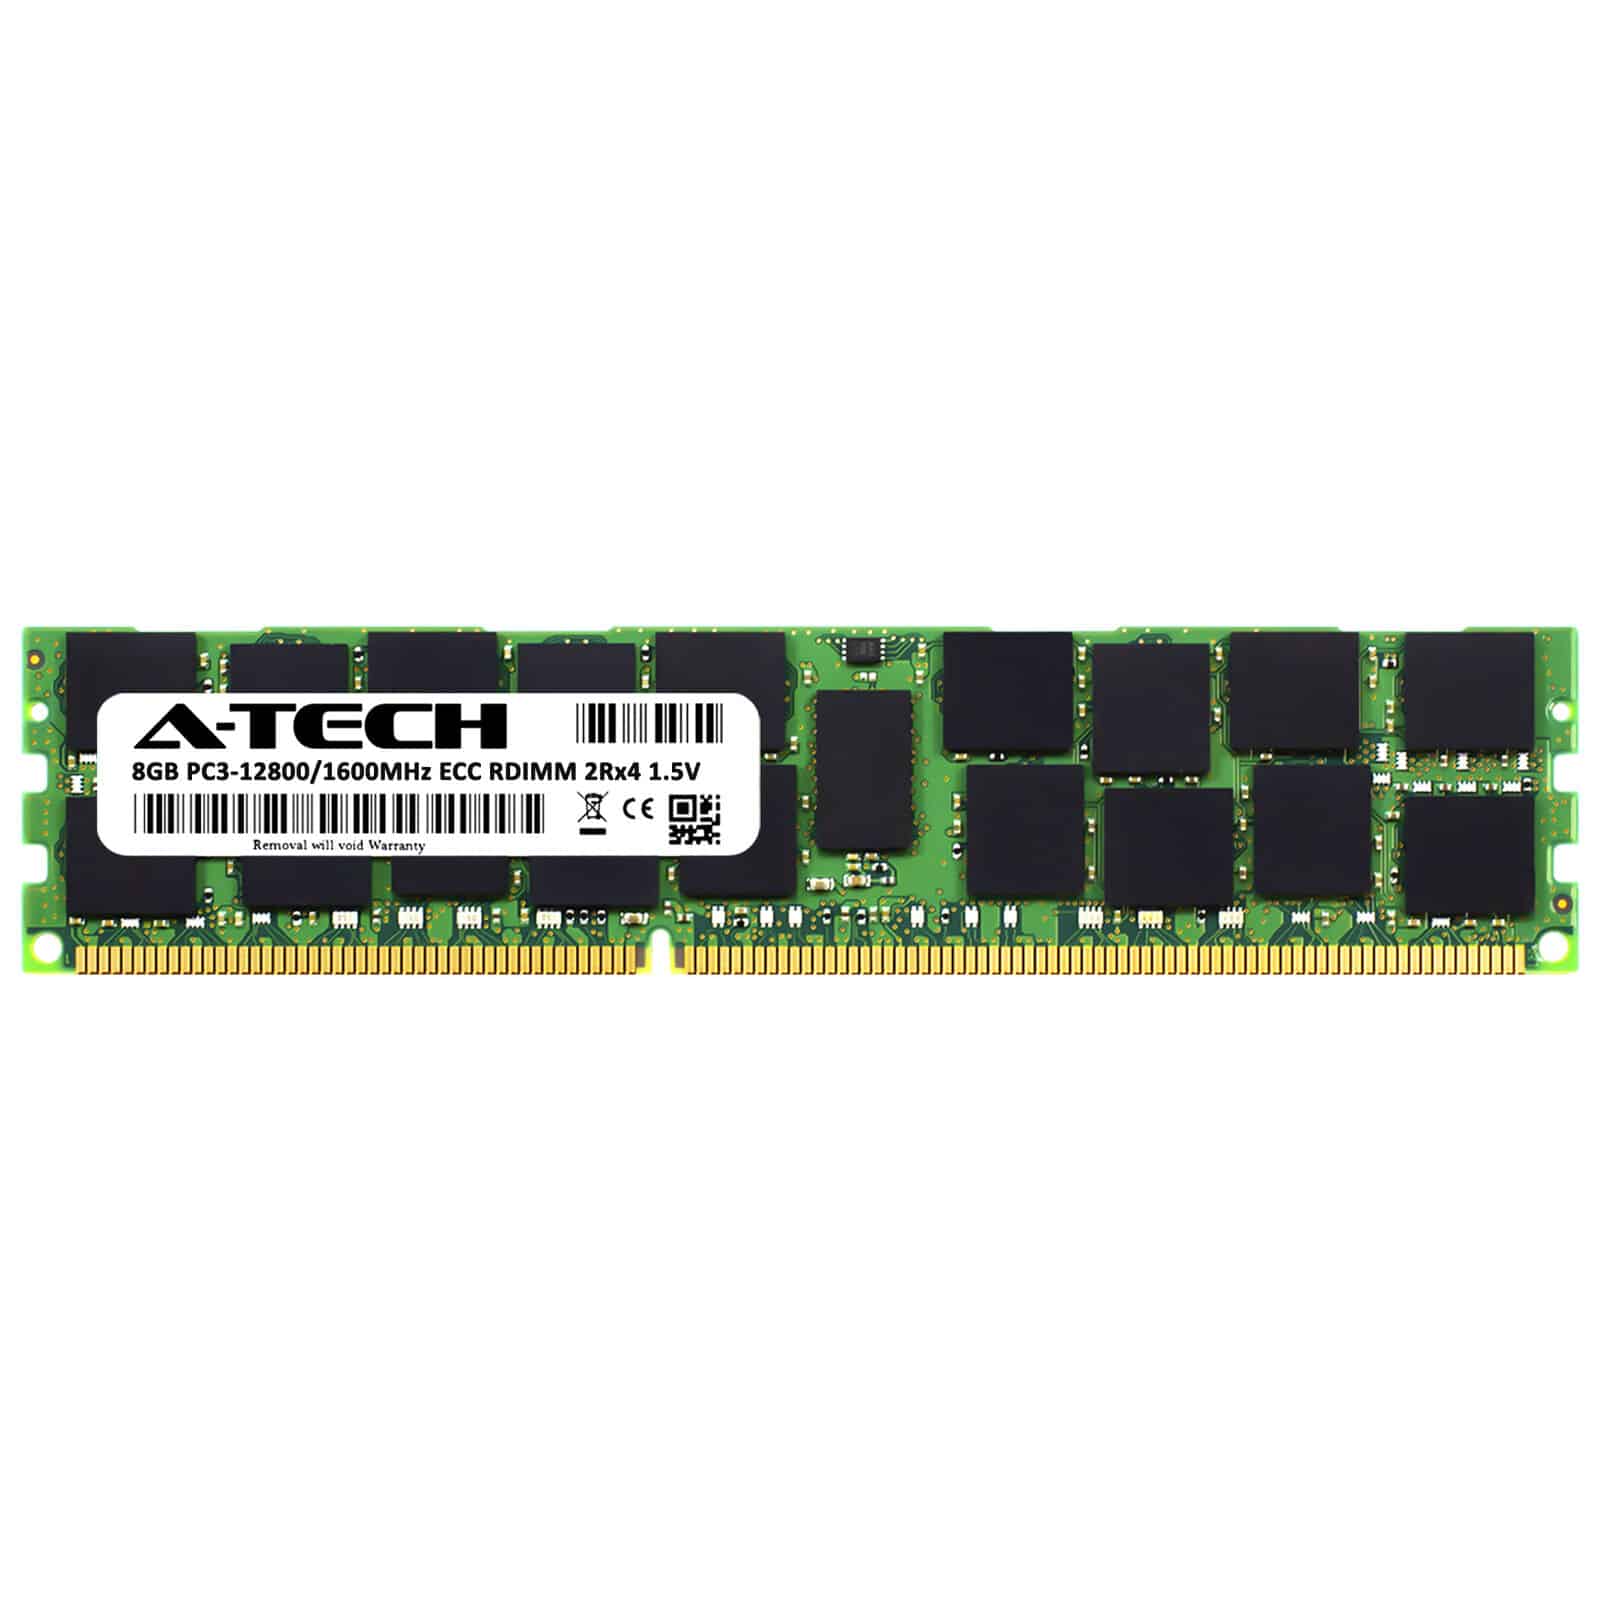 رم سرور A-Tech 8GB PC3 12800R